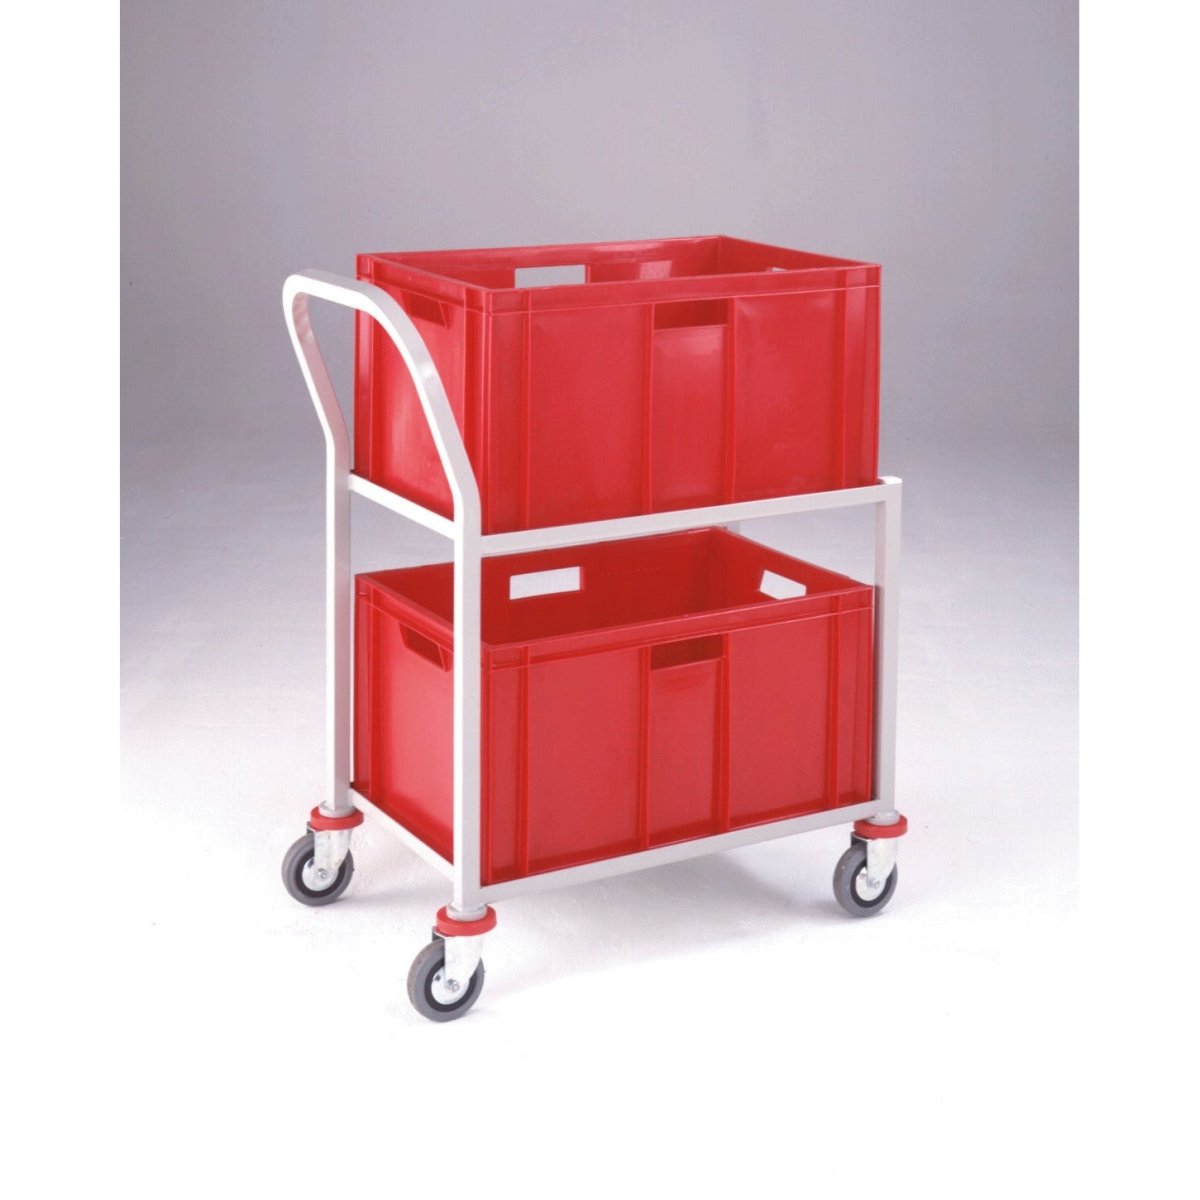 Tote Box & Bins - Warehouse Storage Products